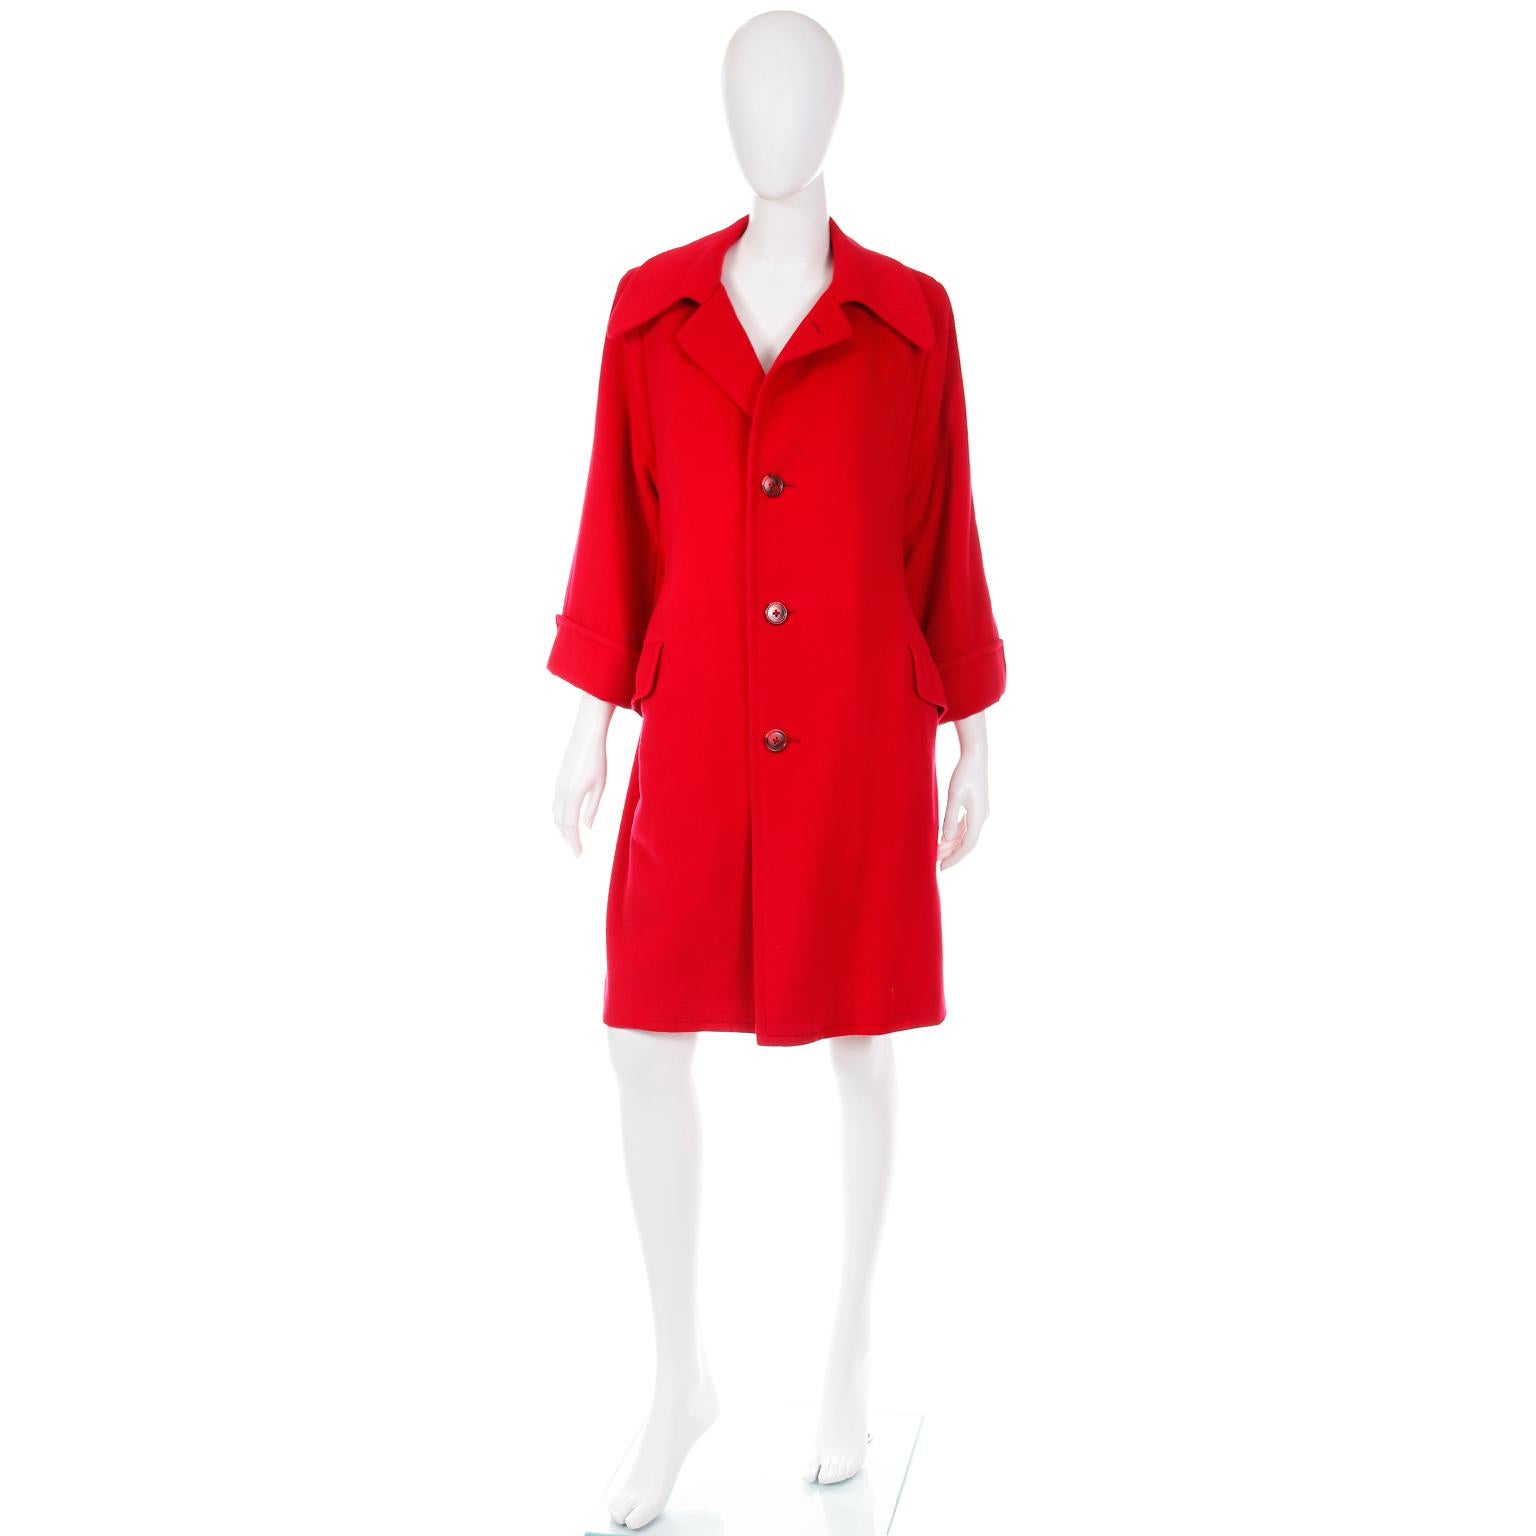 Ce magnifique manteau luxueux en cachemire, d'un rouge parfait, a été fabriqué sur mesure à Hong Kong. Le manteau a deux poches à rabat sur le devant et deux poches intérieures boutonnées. Il y a une fente de 16 pouces au centre du dos et le manteau